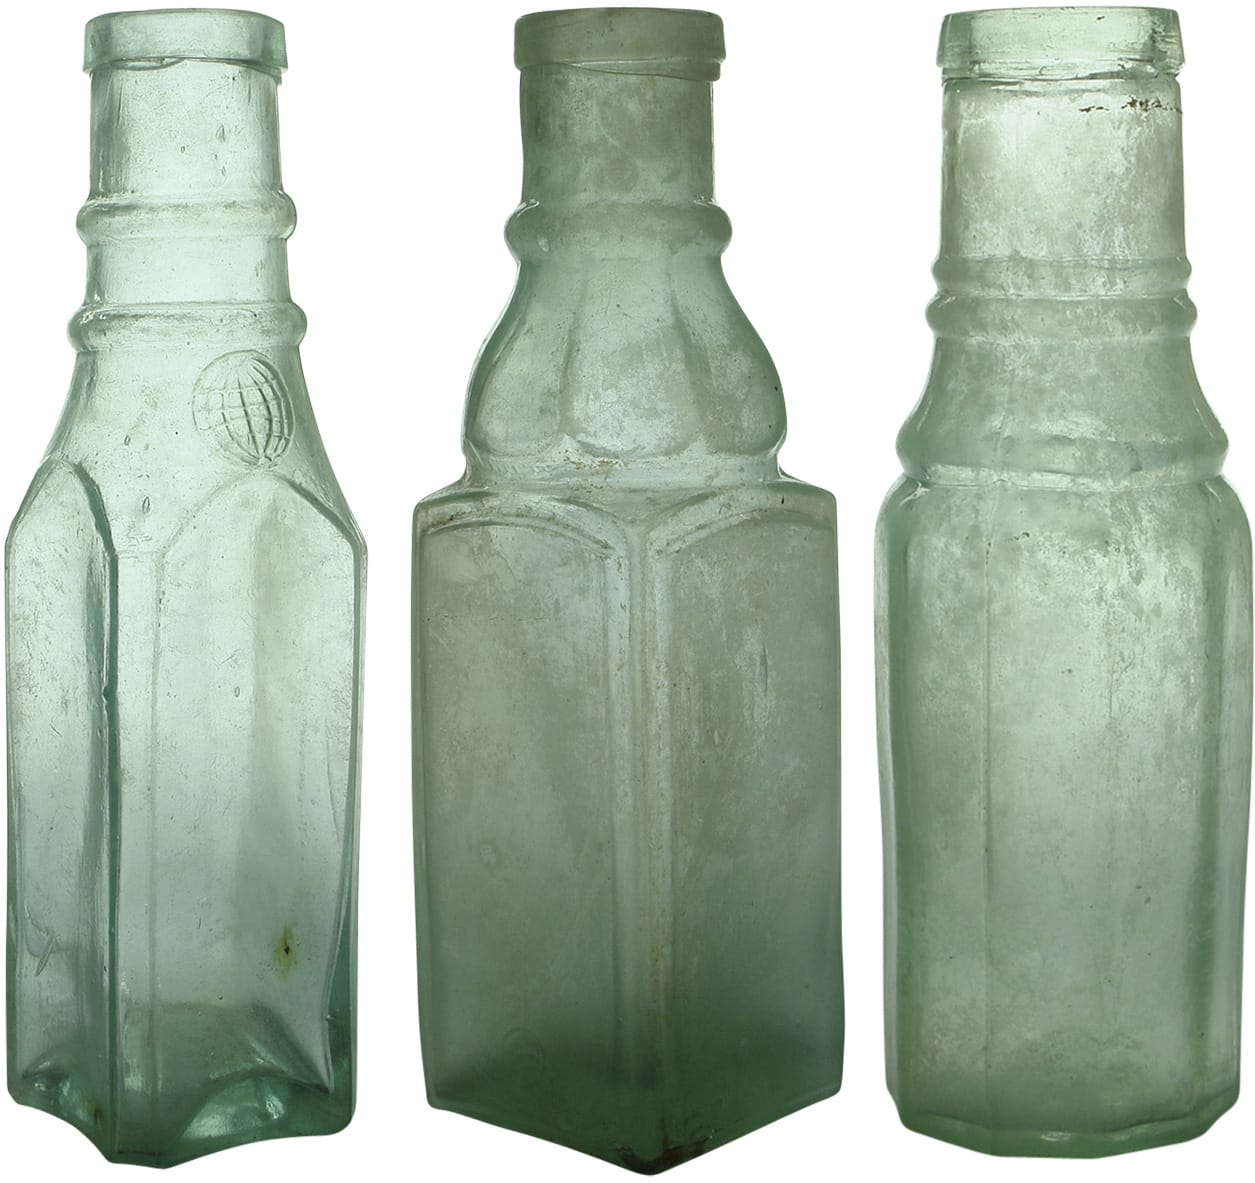 Antique Victorian Goldfields Era Pickle Bottles